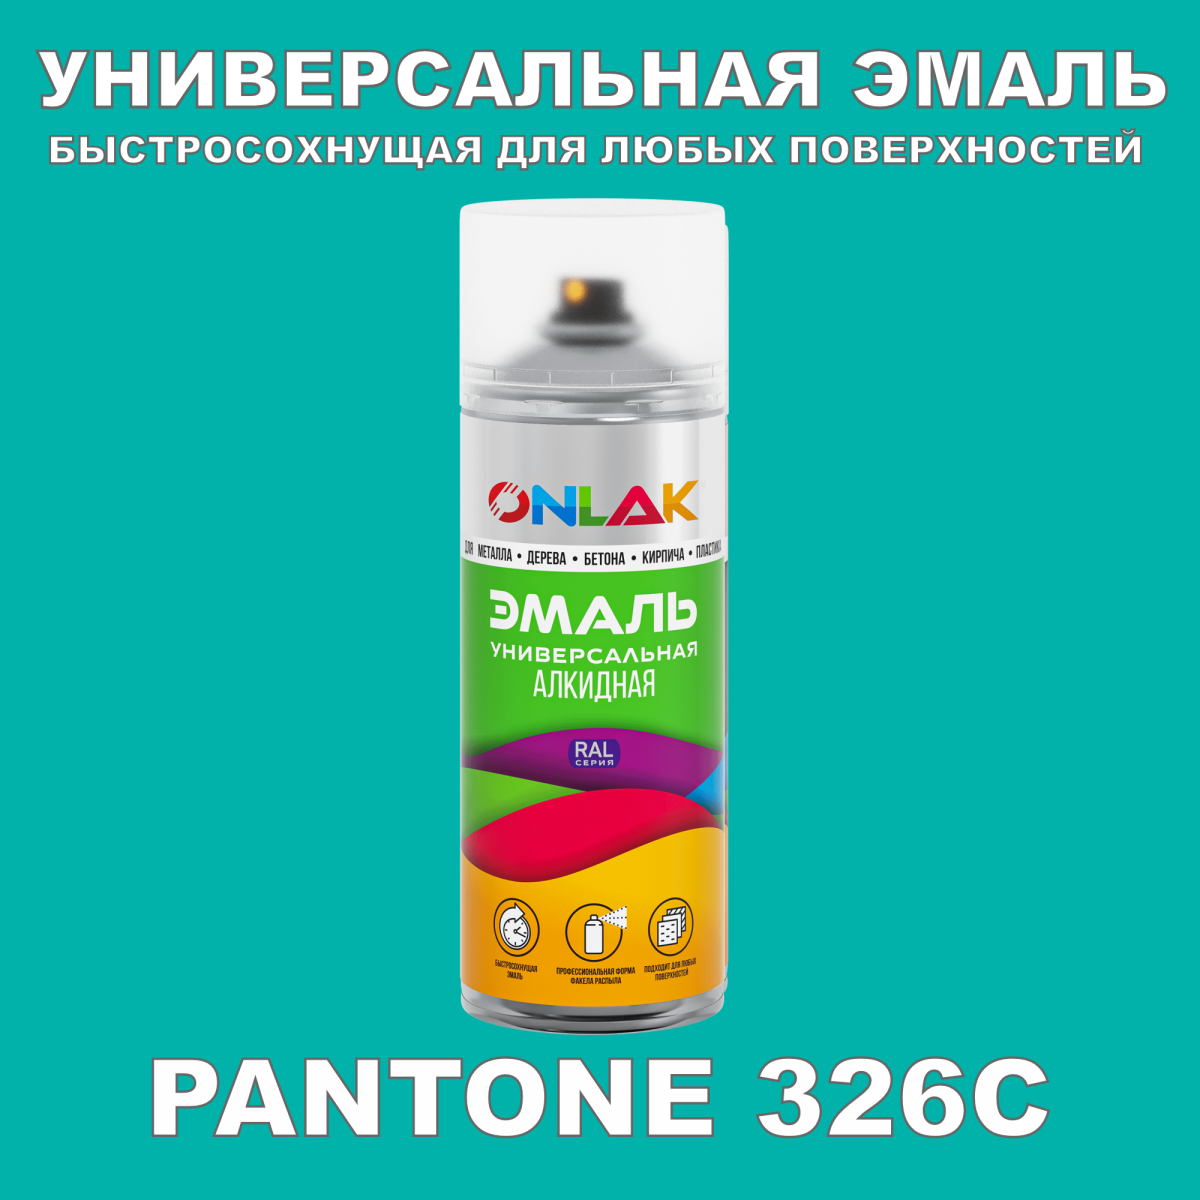 Аэрозольная краска ONLAK, цвет PANTONE 326C, спрей 400мл купить с доставкойпо России, доступная цена - интернет-магазин ONLAK.RU